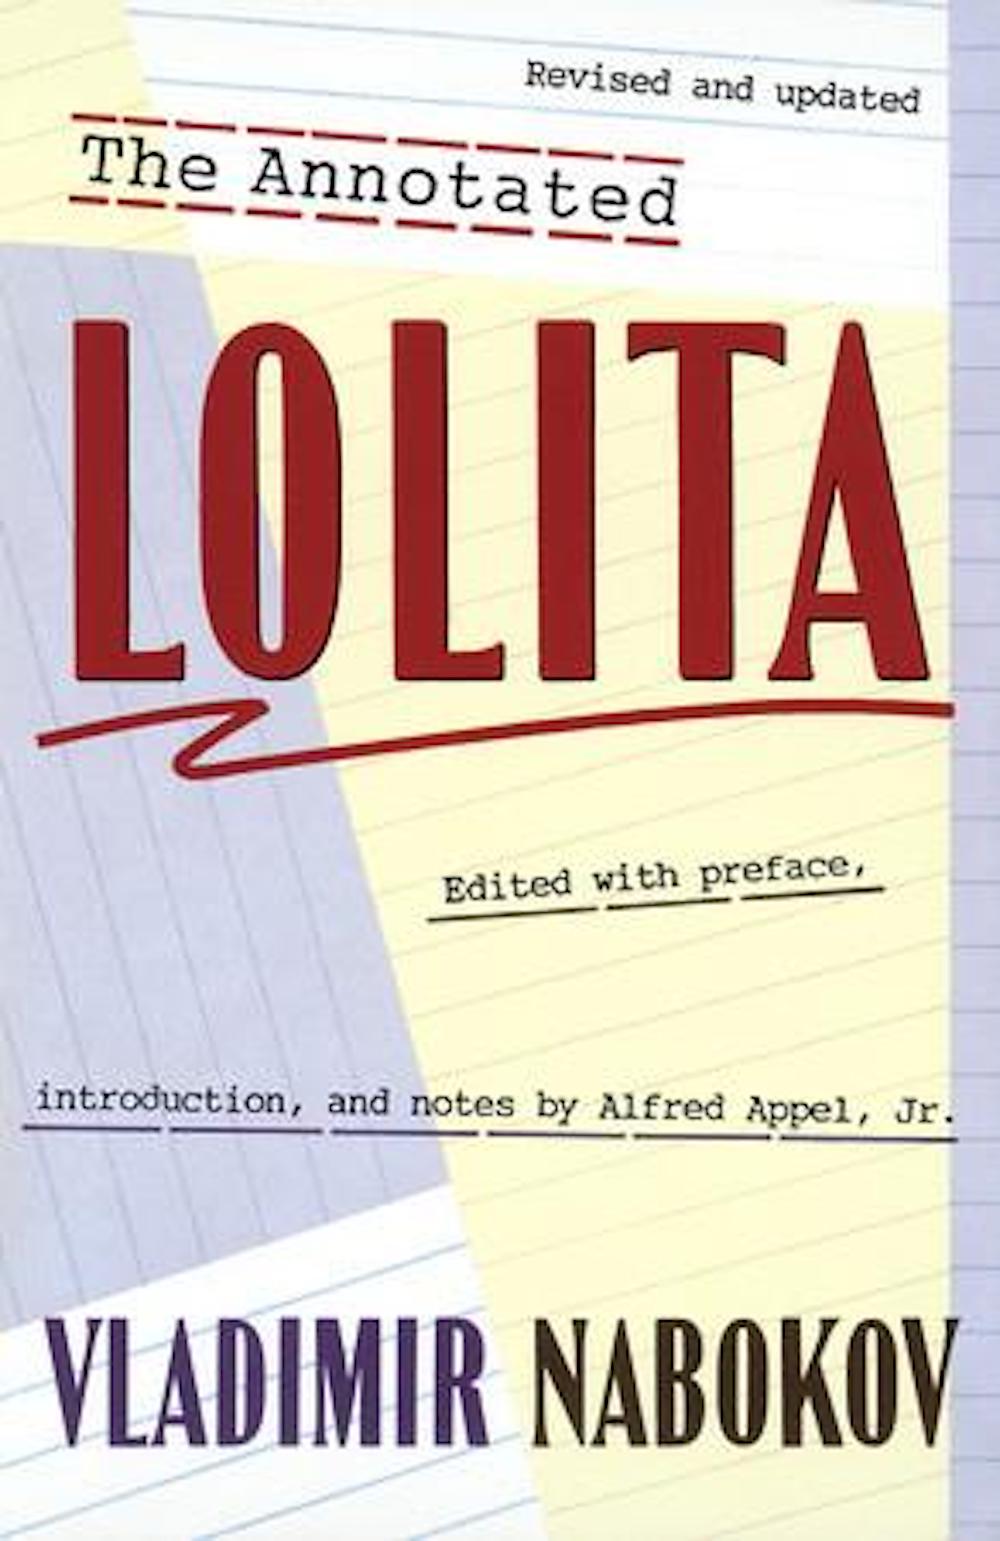 The annotated <em>Lolita</em> published by Random House in 1991. Image: Vladimir Nabokov / Facebook 